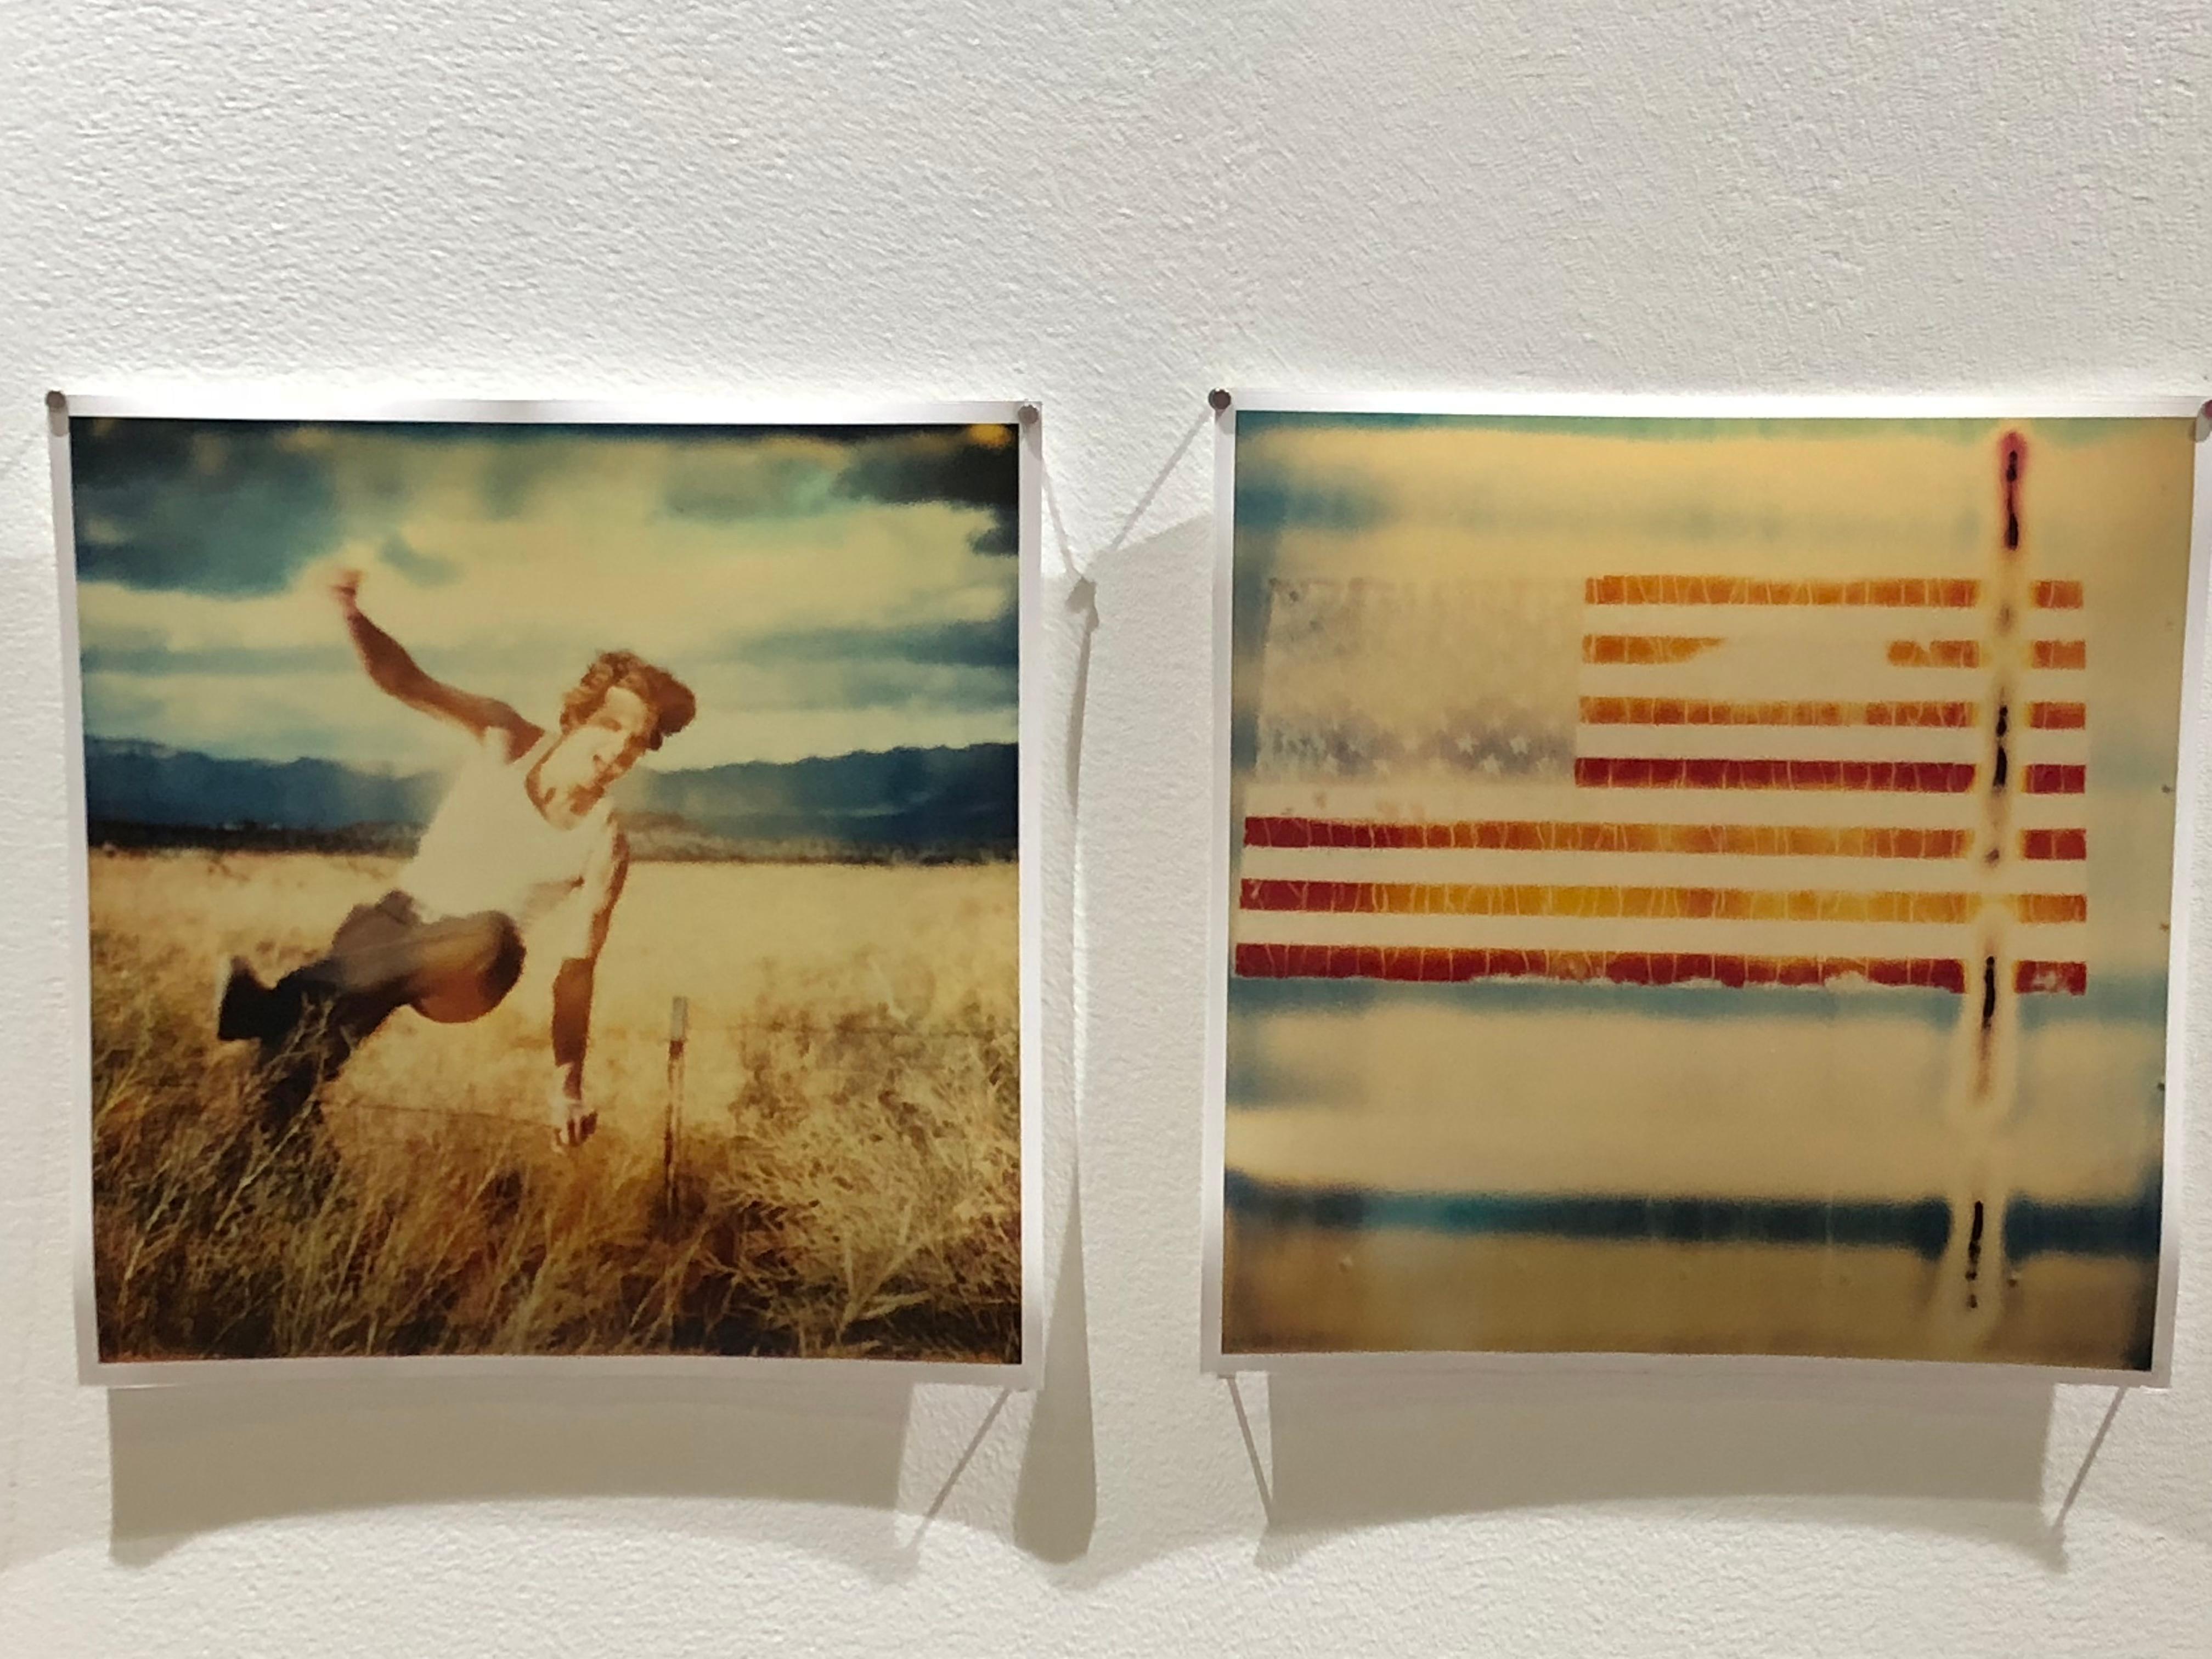 Field of Dreams (Sidewinder), analog- Polaroid, Contemporary, 21st Century - Beige Landscape Photograph by Stefanie Schneider